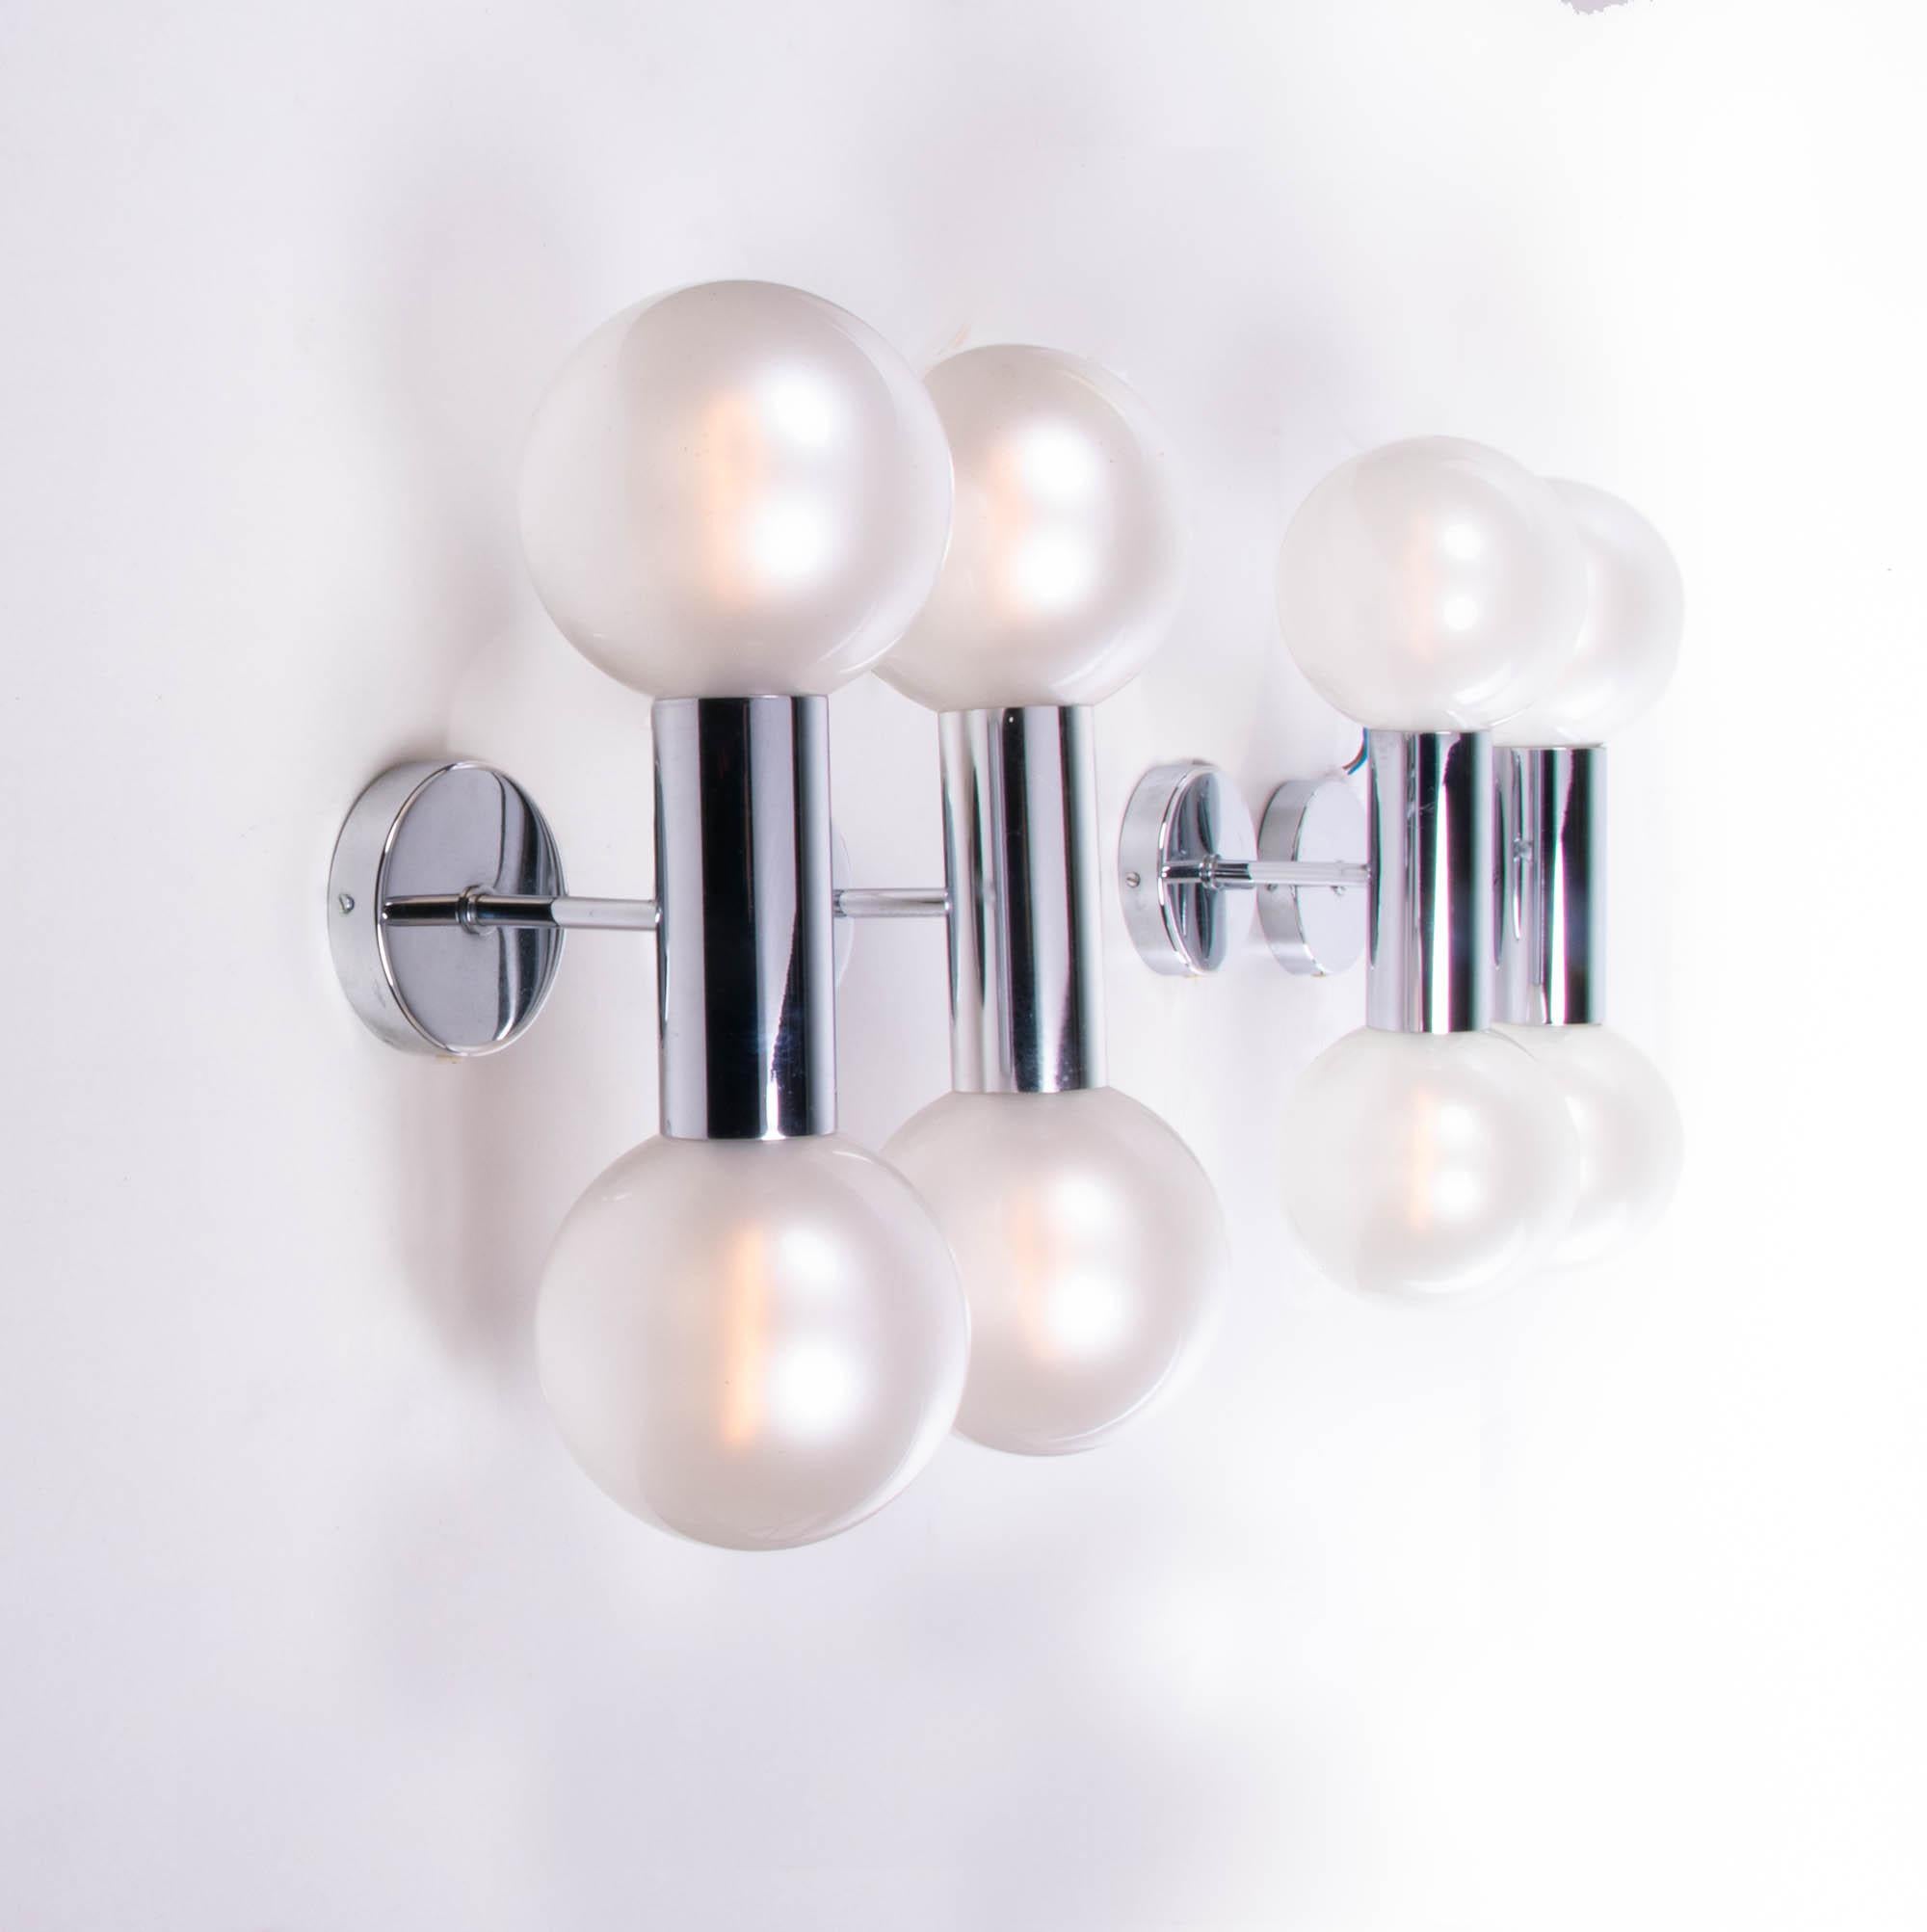 Elegantes Paar Sputnik-Wandleuchter mit mundgeblasenen, perlmuttartig schimmernden Glaskugeln, die auf einen verchromten Sockel geschraubt sind. Entworfen von der IF-prämierten Designerin Motoko Ishii für Staff Lighting, Deutschland, 1970er Jahre.